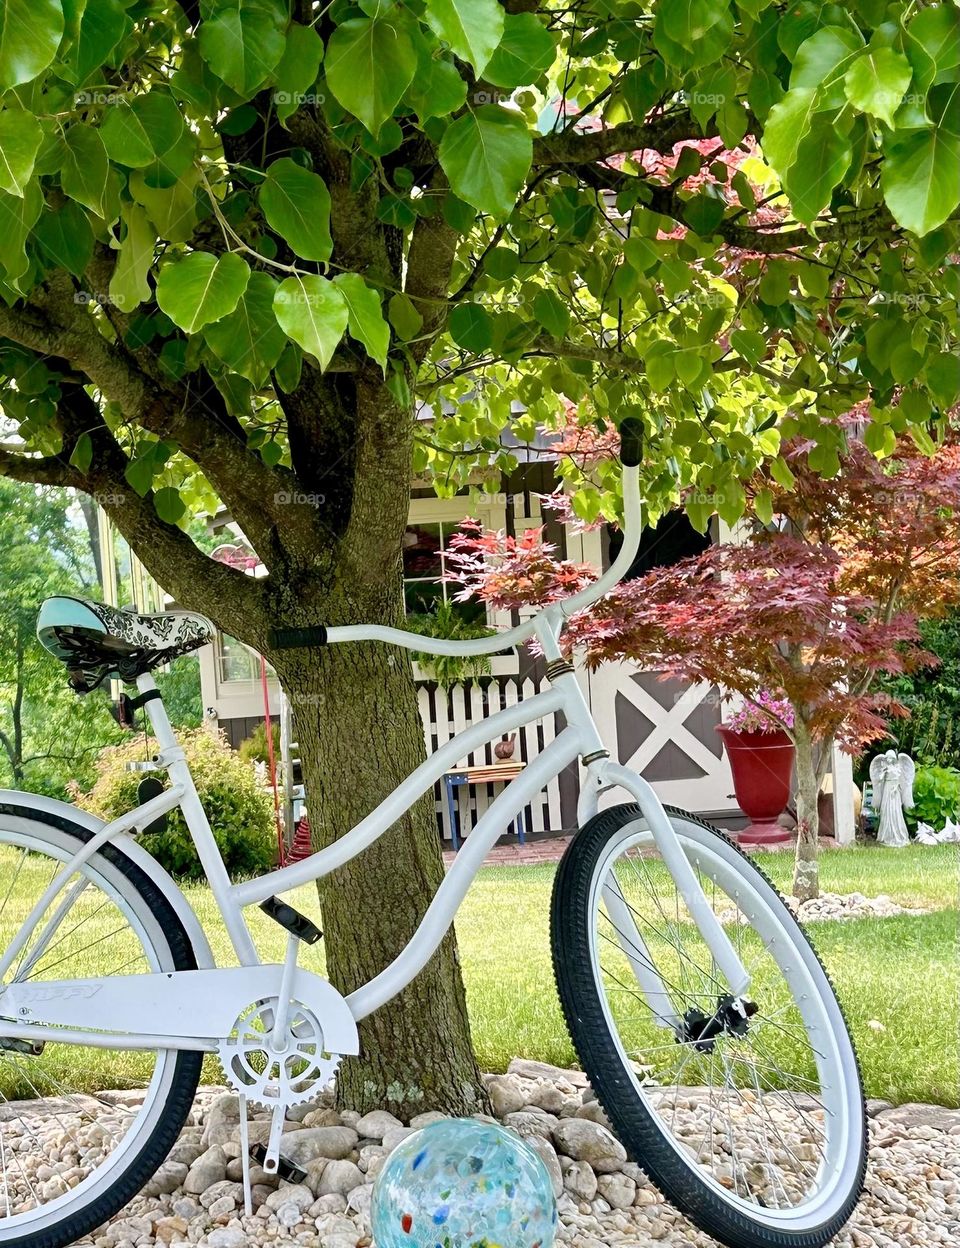 White bike under a tree